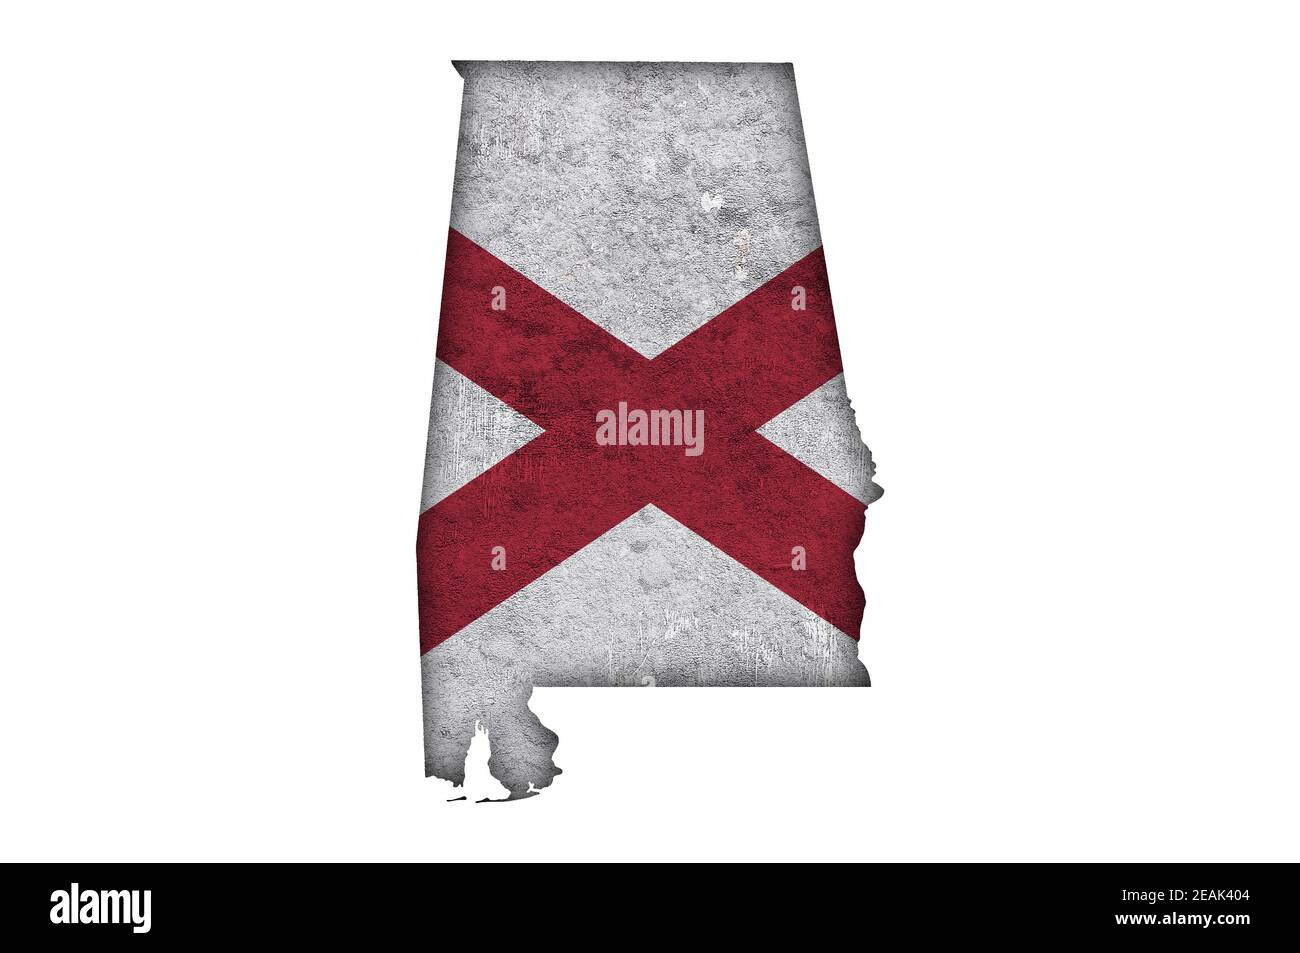 Karte und Flagge von Alabama auf verwittertem Beton Stockfoto